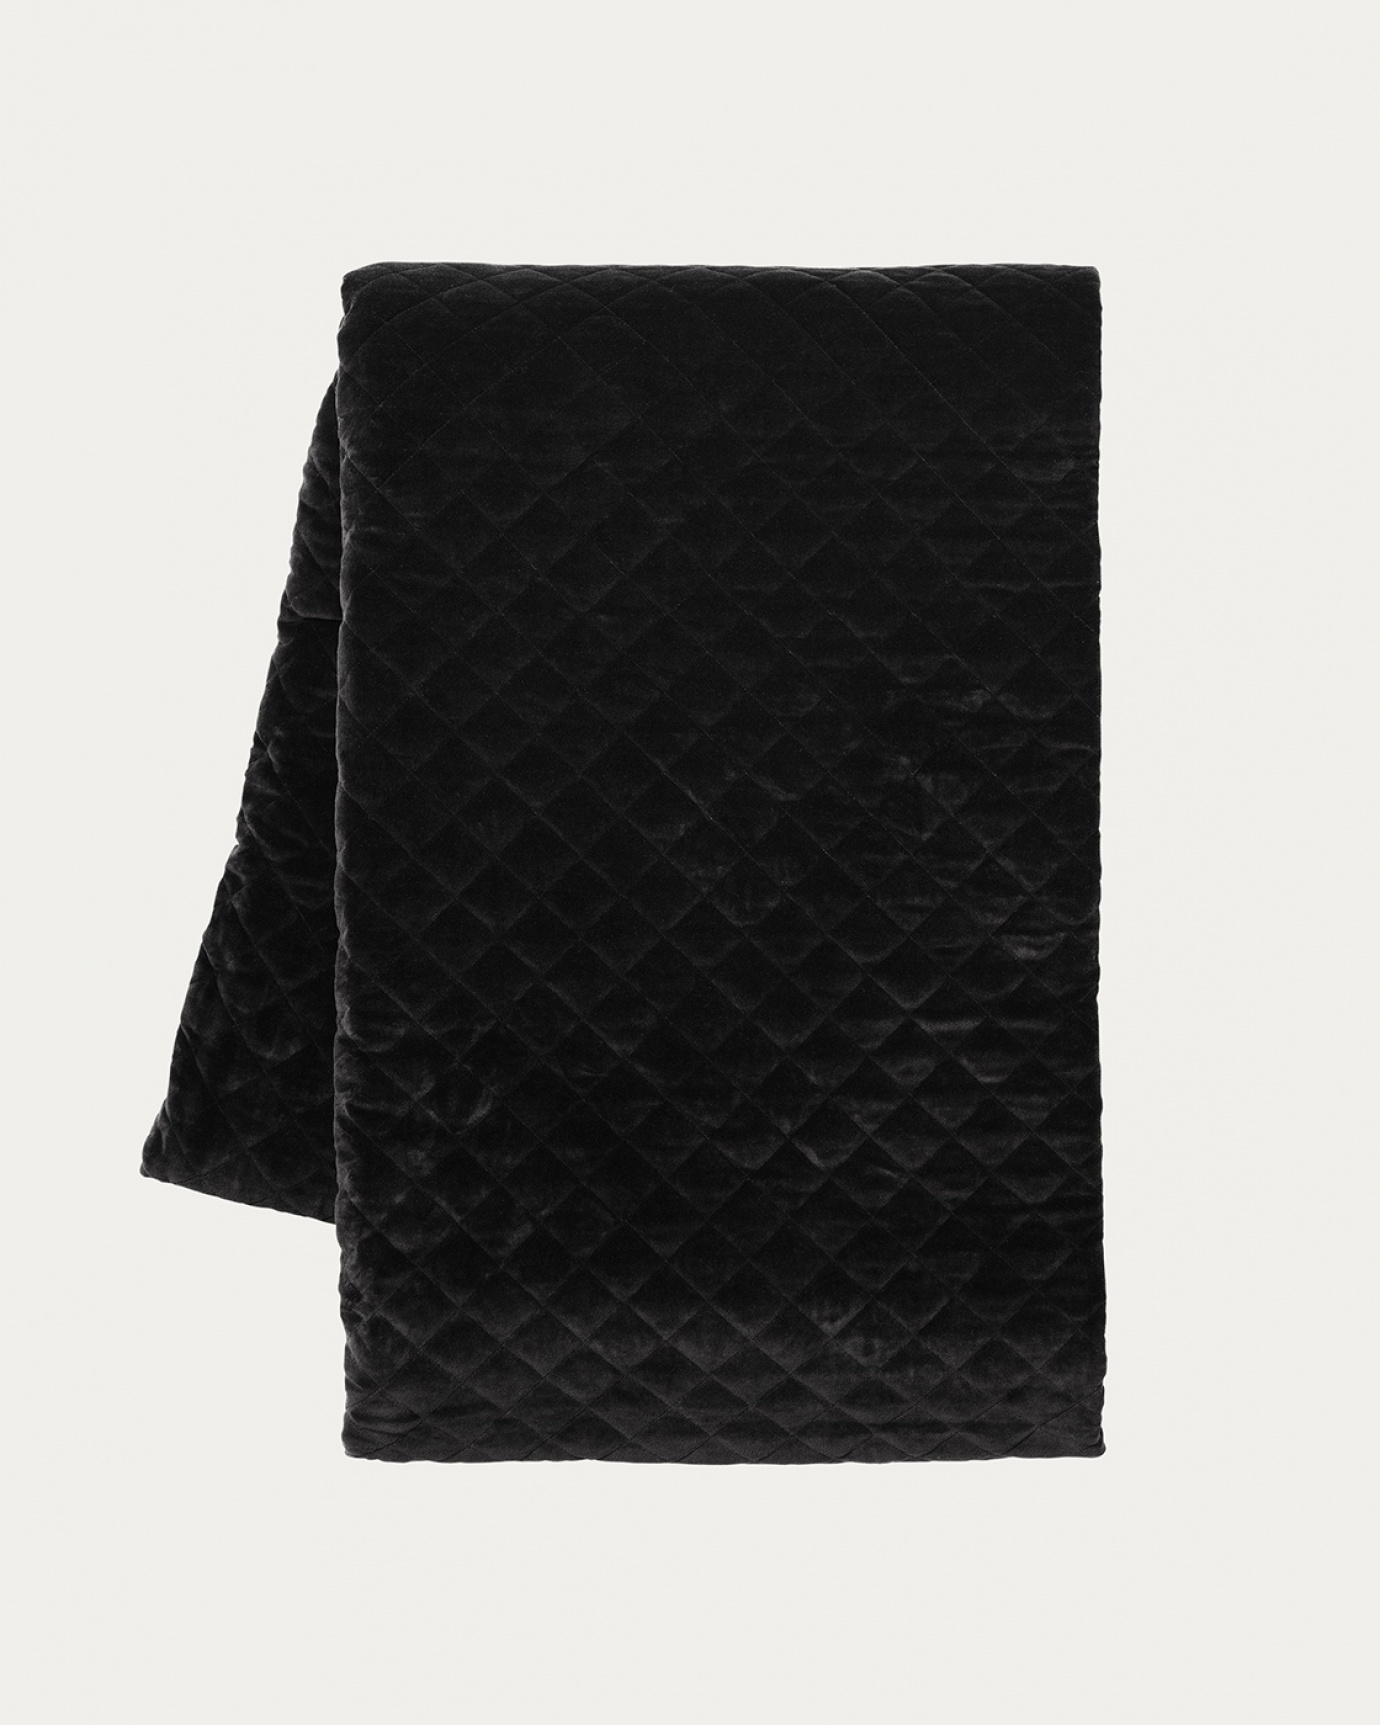 Produktbild schwarz Tagesdecke PICCOLO aus weichem Samt aus bio-baumwolle für Einzelbett von LINUM DESIGN. Größe 170x260 cm.